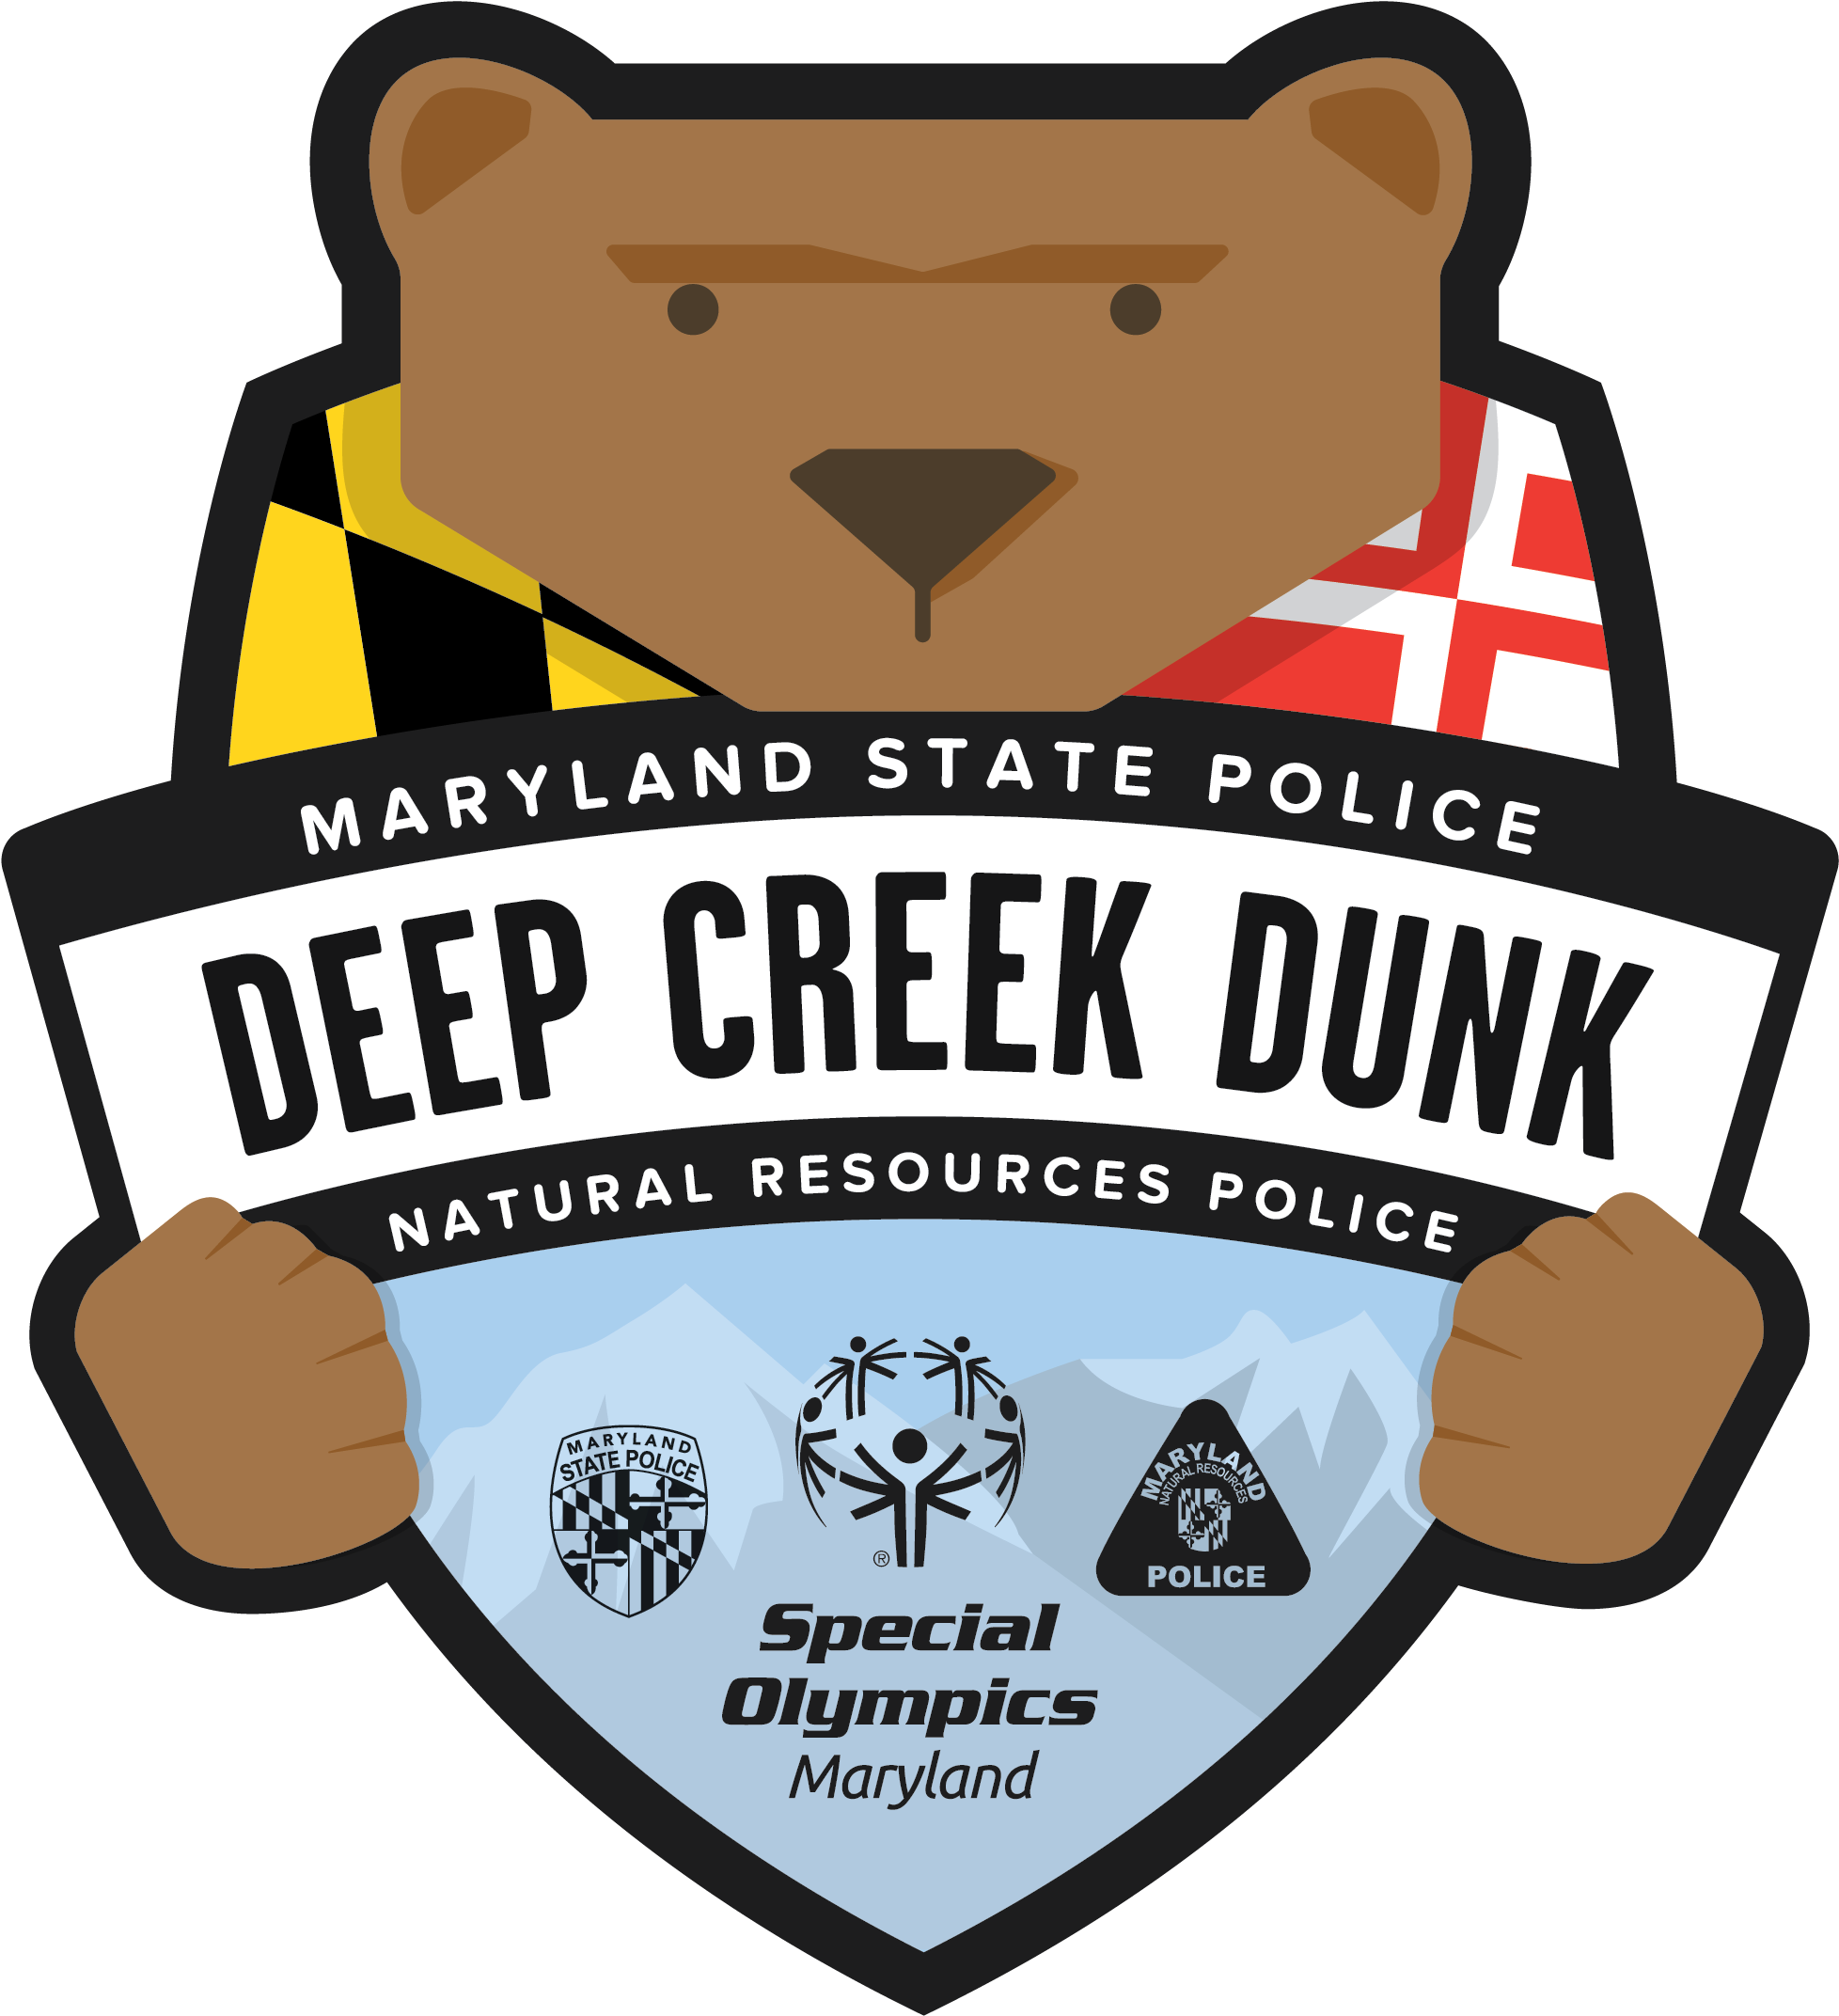 20th Annual Msp/nrp Deep Creek Dunk - Deep Creek Dunk 2018 (2001x2203)